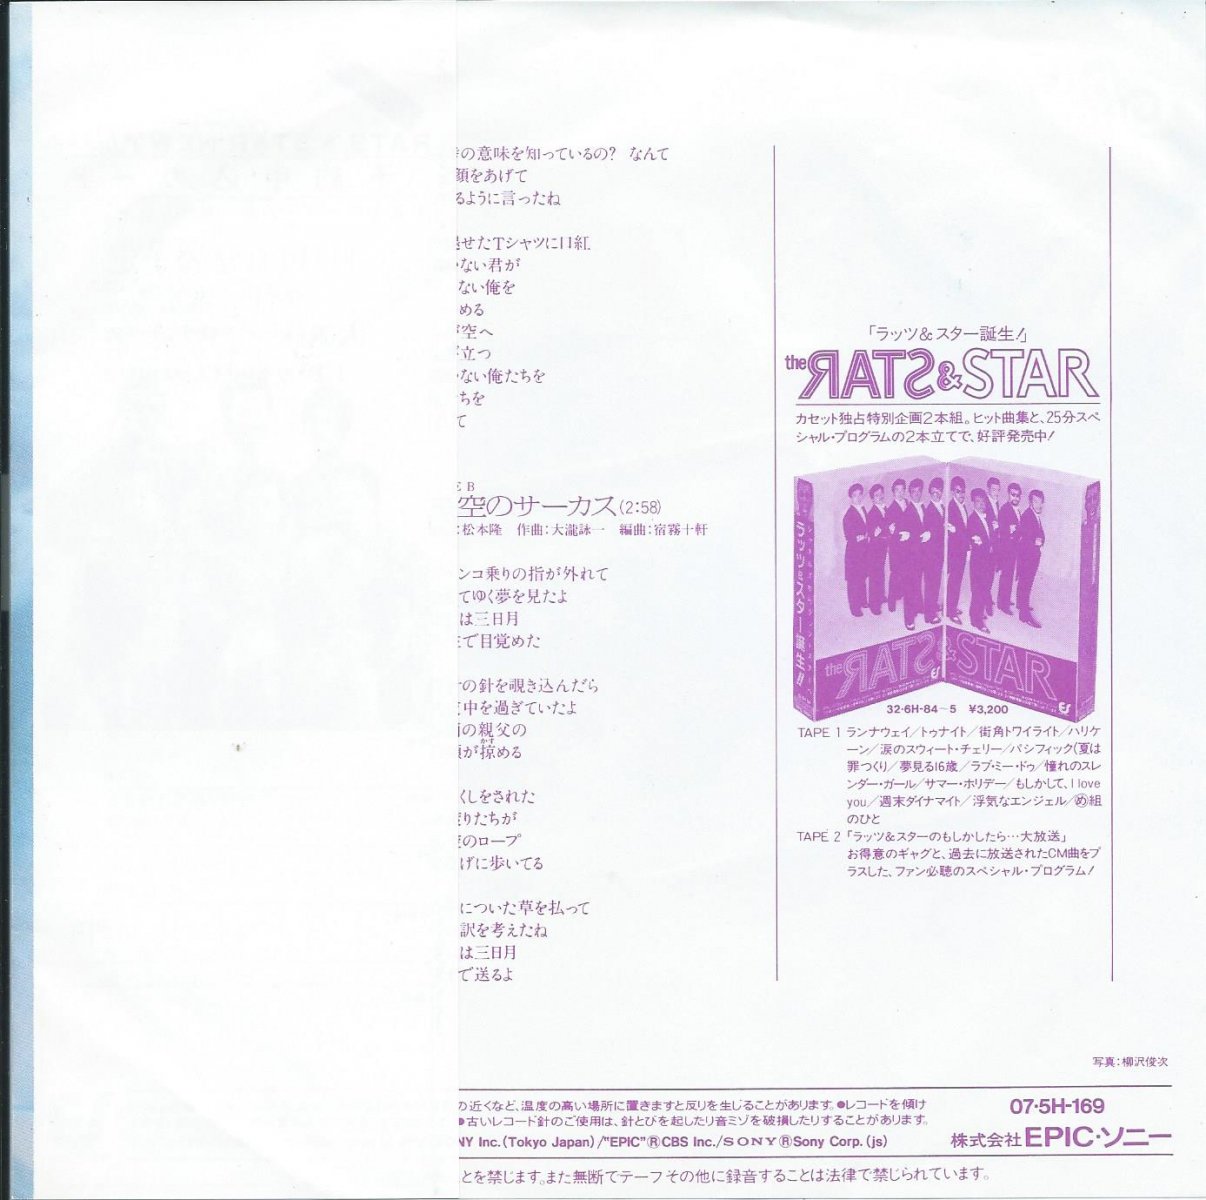 ラッツ  スター RATS  STAR (松本隆,大瀧詠一) Tシャツに口紅 星空のサーカス (7") HIP TANK RECORDS